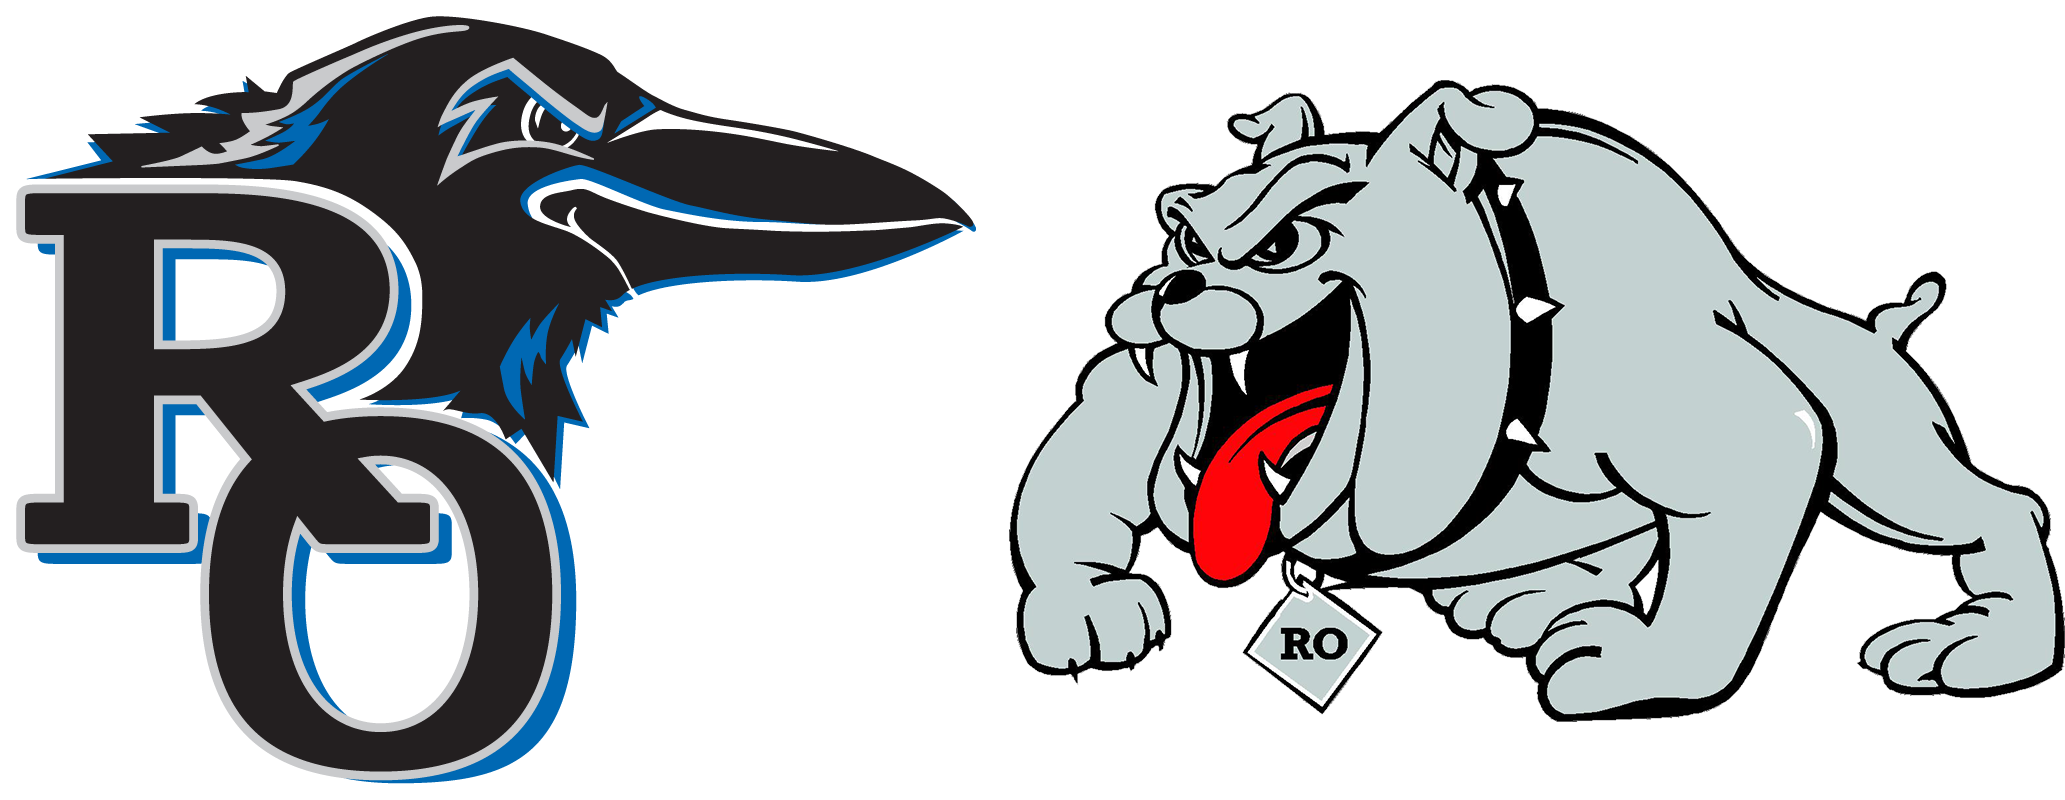 Baltimore Ravens - Royal Oak High School Logo (2167x873), Png Download